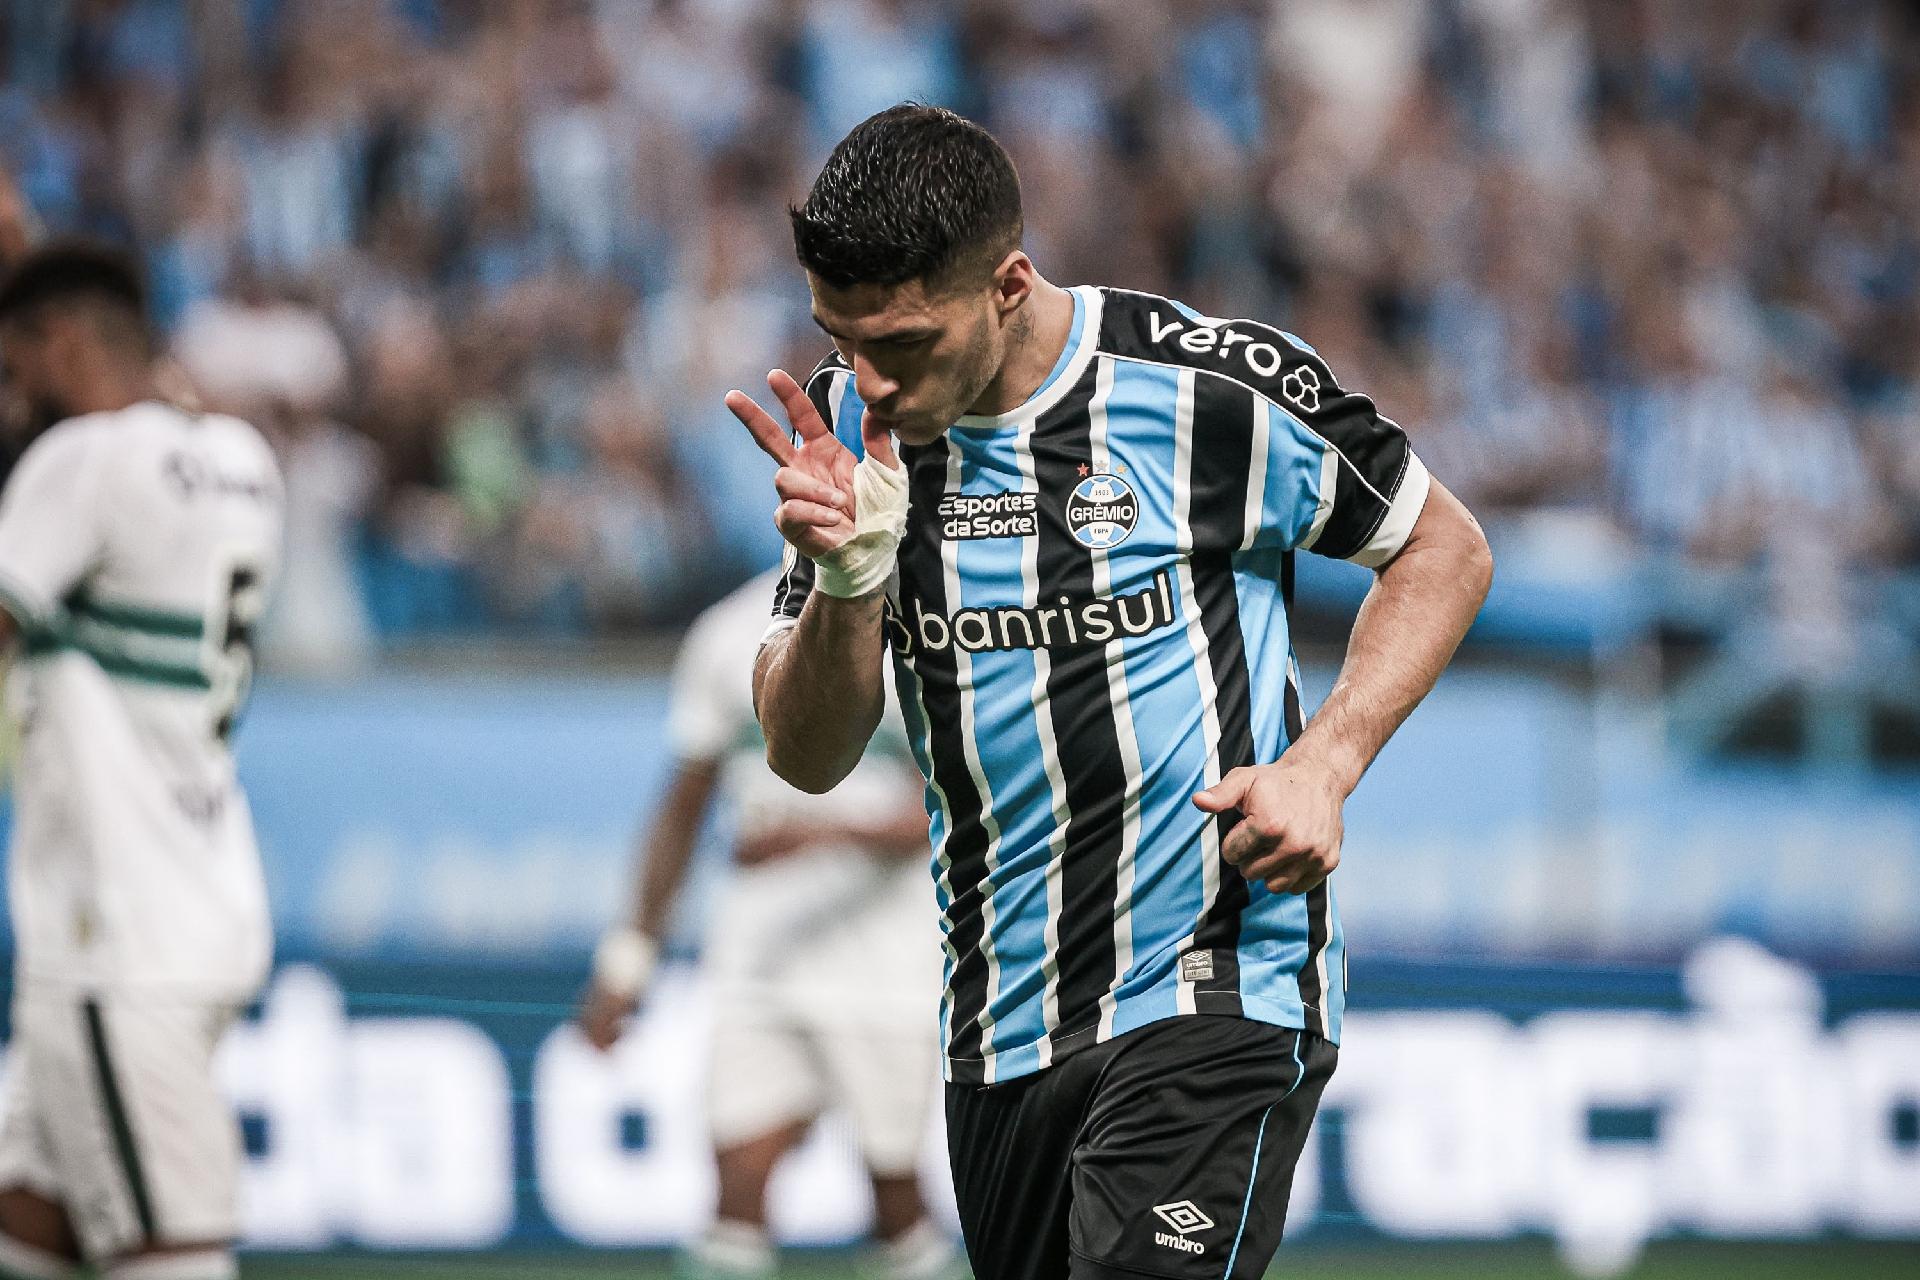 Brasileirão: como foram os últimos jogos entre Coritiba e Grêmio?